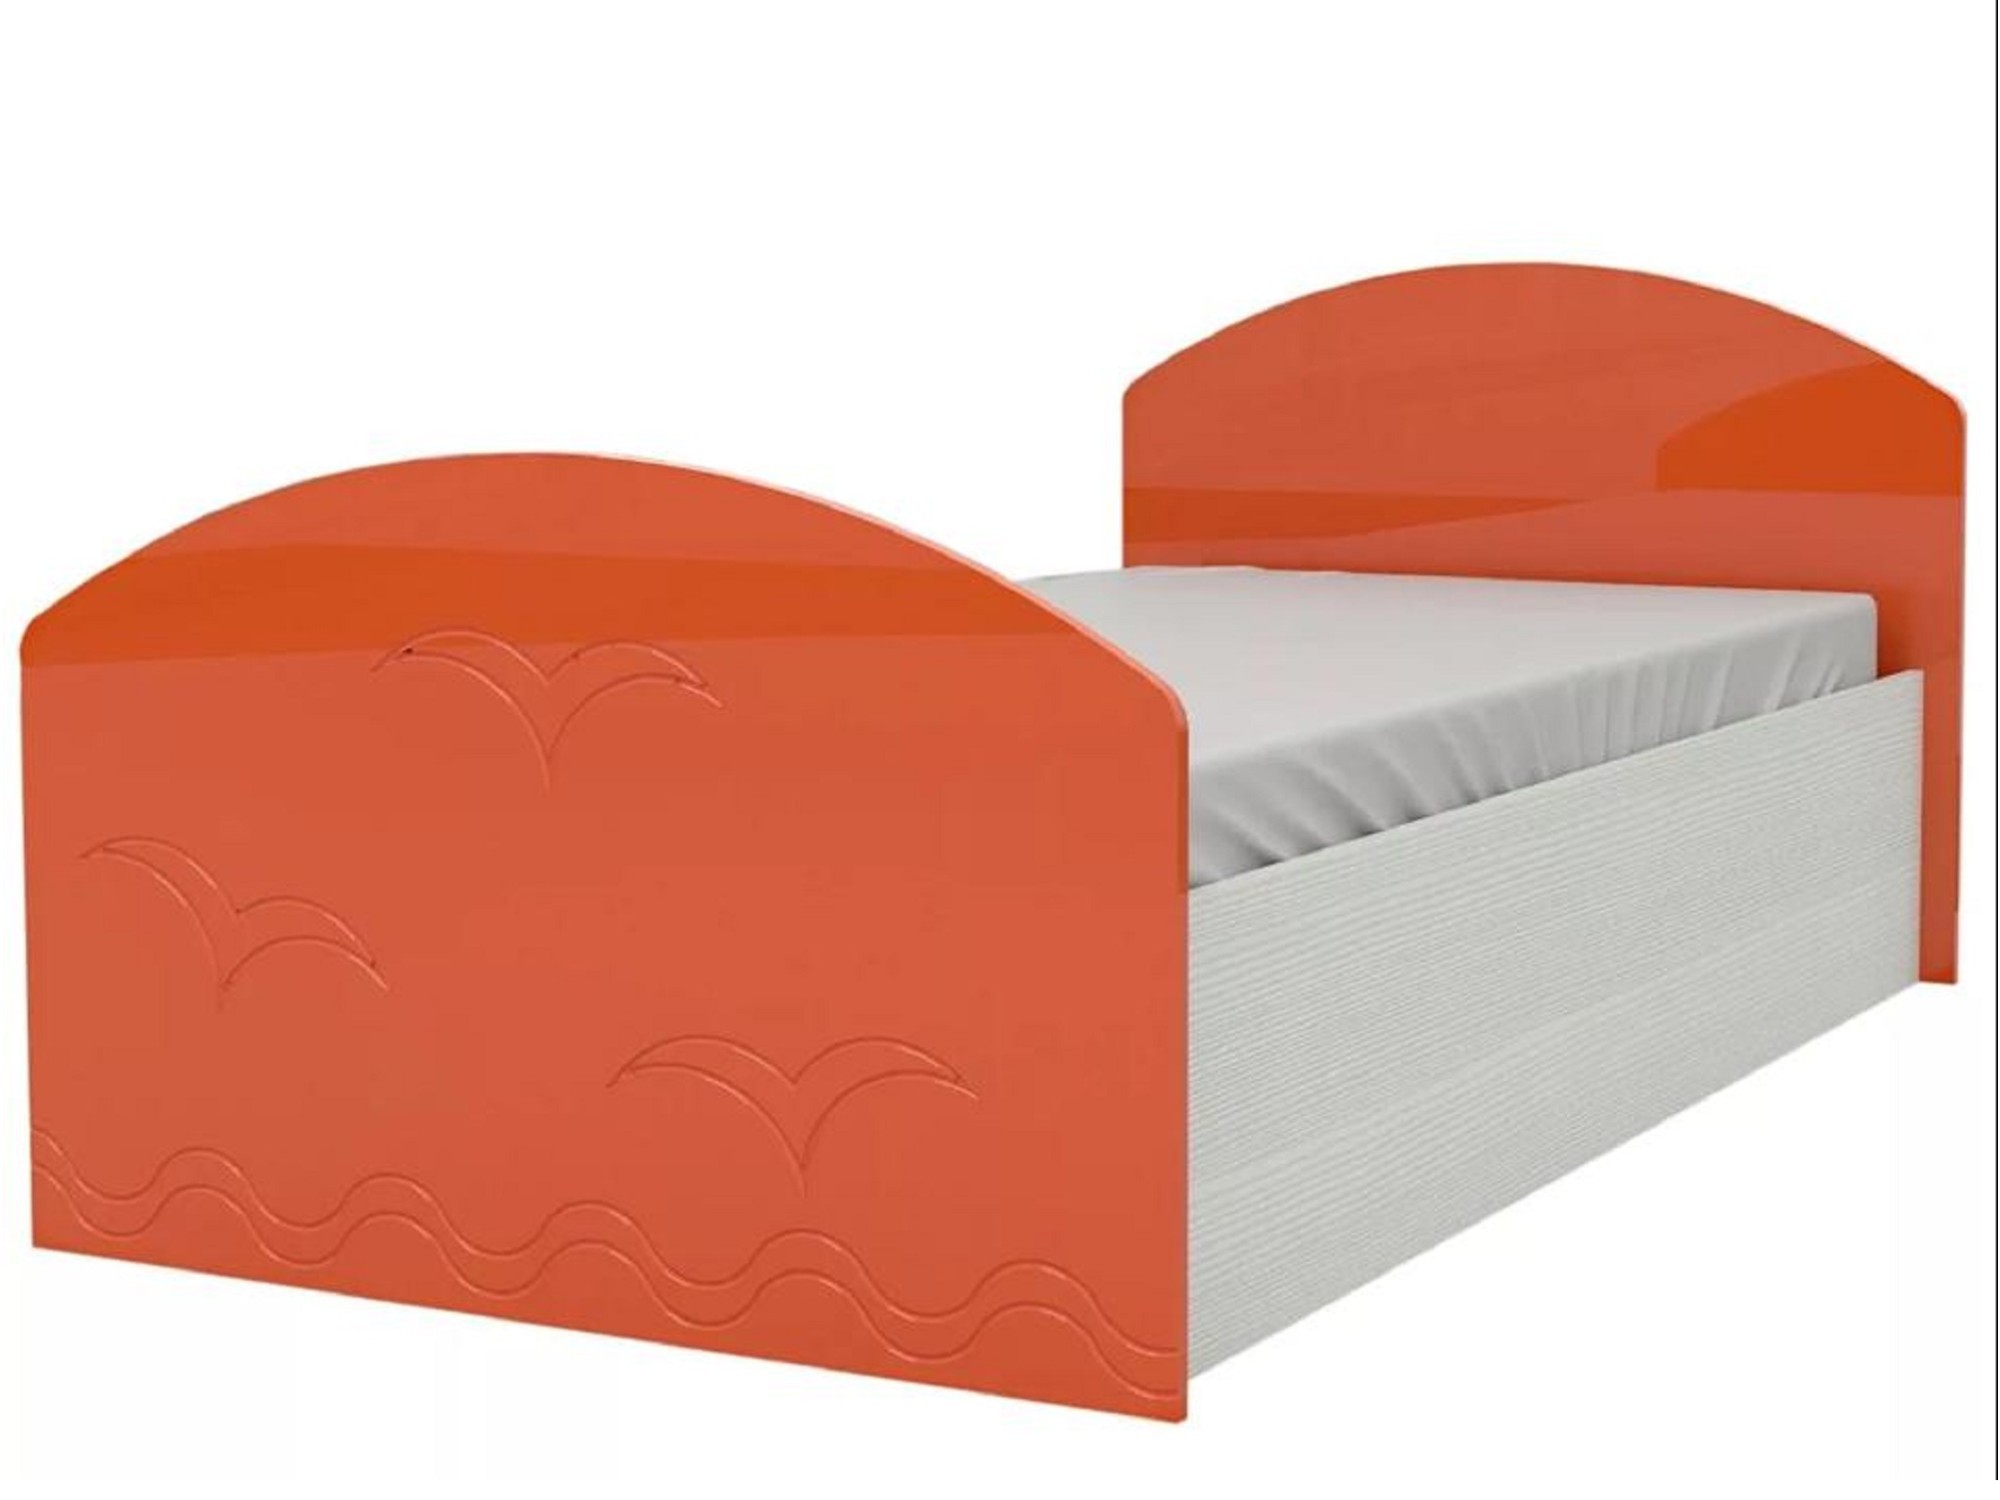 Юниор-2 Детская кровать 80, металлик (Оранжевый металлик, Дуб белёный) Дуб белёный, МДФ, ЛДСП шкаф комбинированный олимп лего 6 дуб линдберг пвх оранжевый металлик